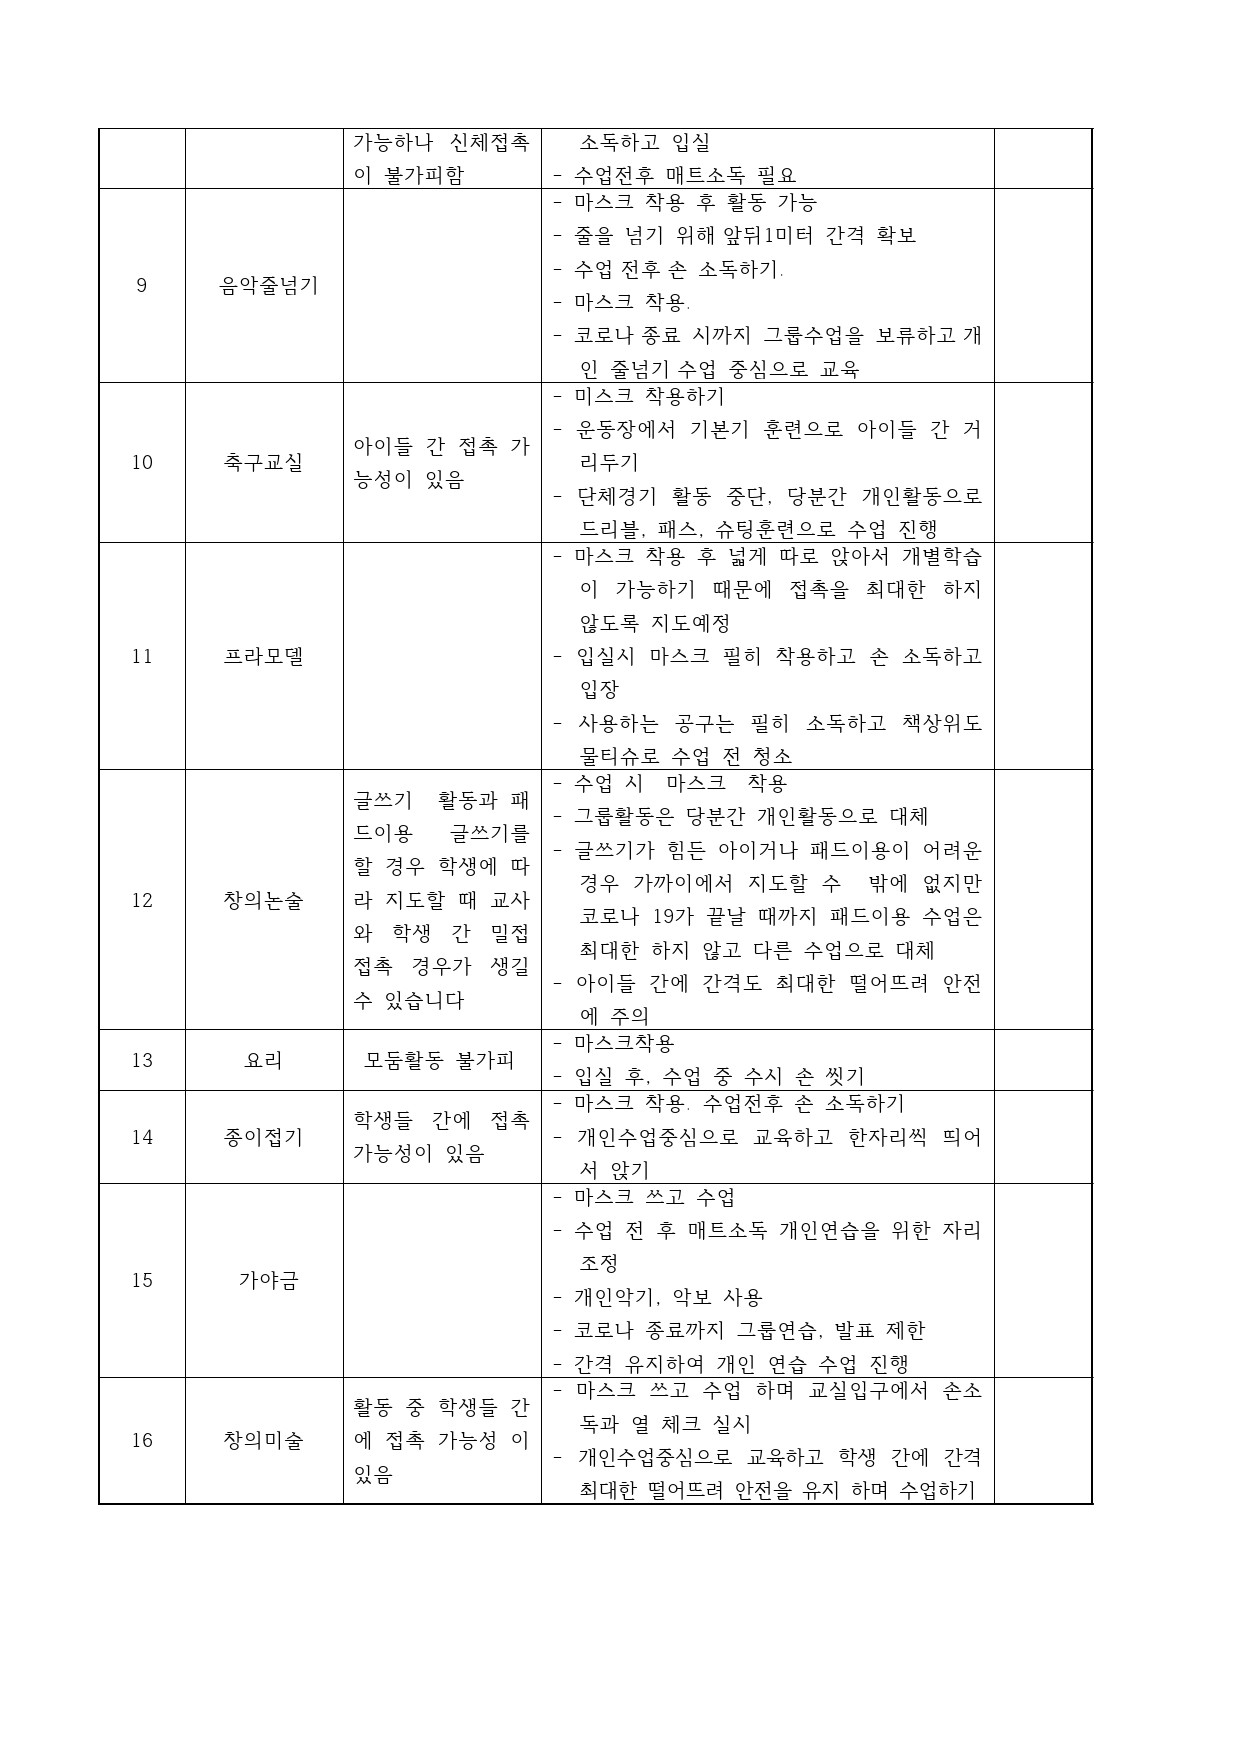 방과후학교 코로나19 대응 방안(2020. 05. 11. 목원스마트스쿨)-2.jpg